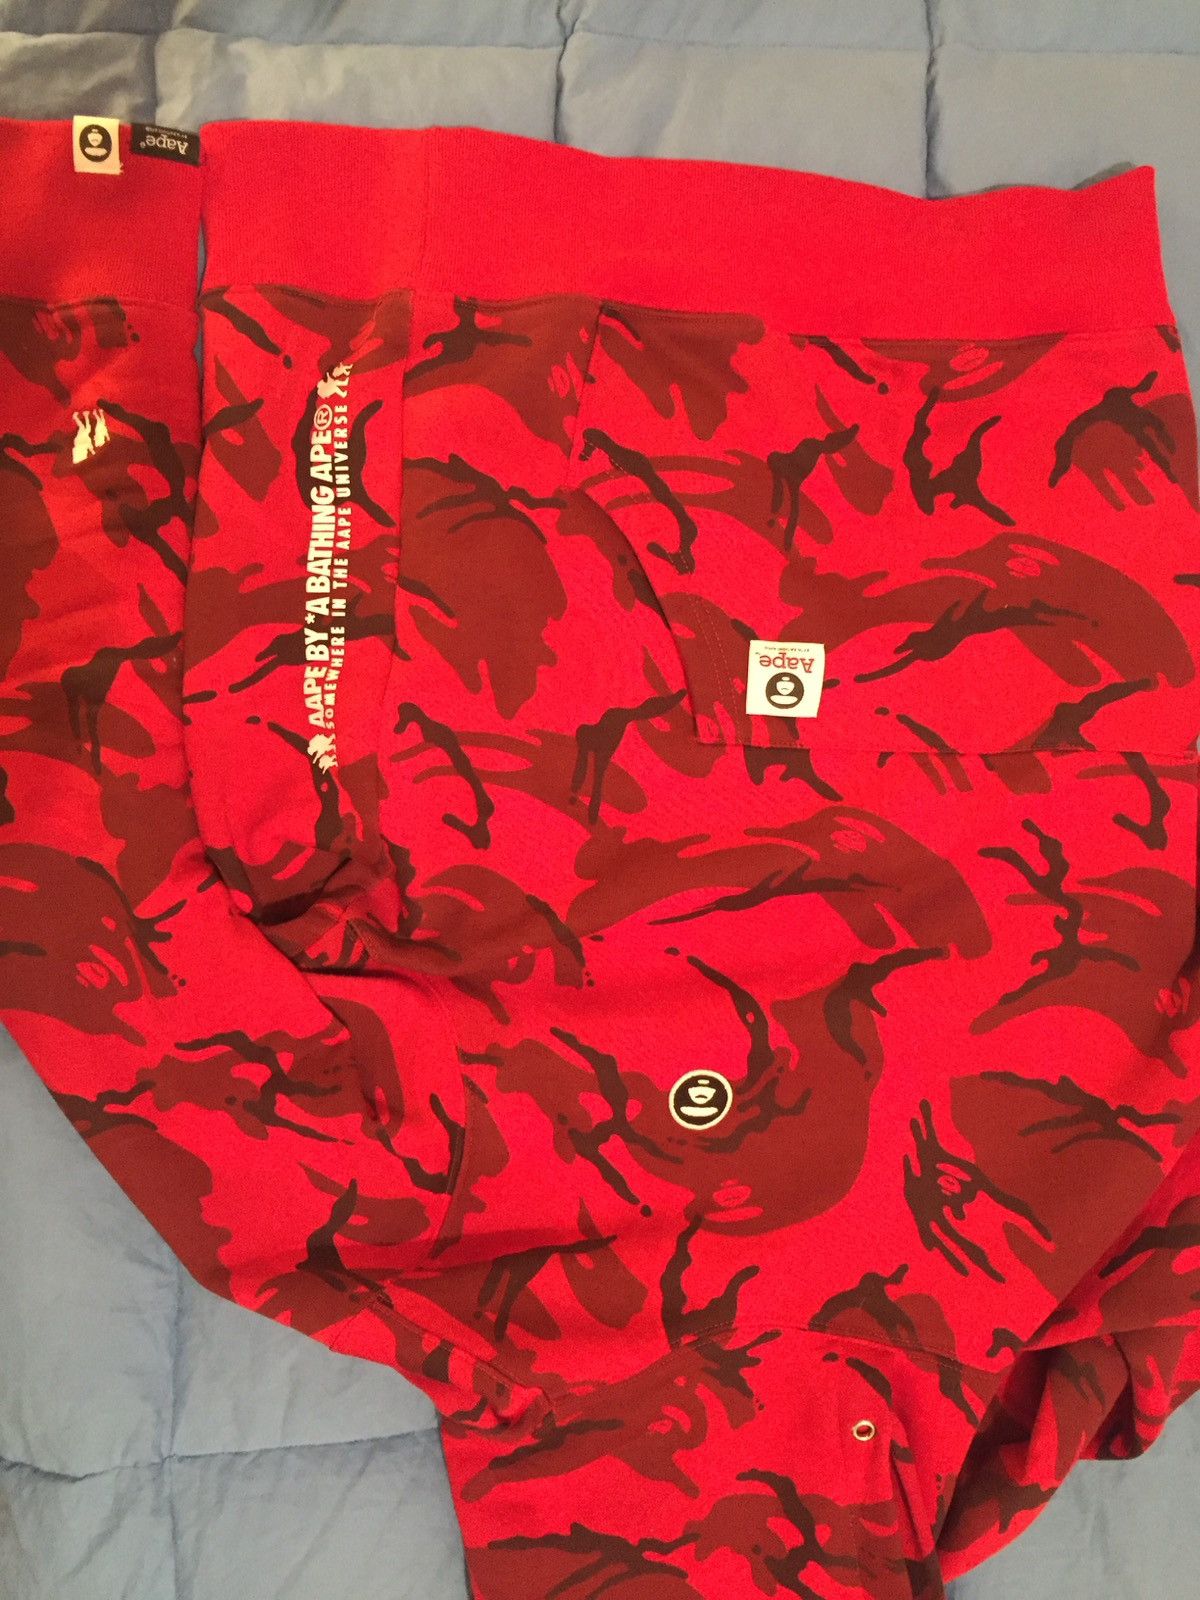 Bape Red Camo Hoodie Size US L / EU 52-54 / 3 - 3 Preview